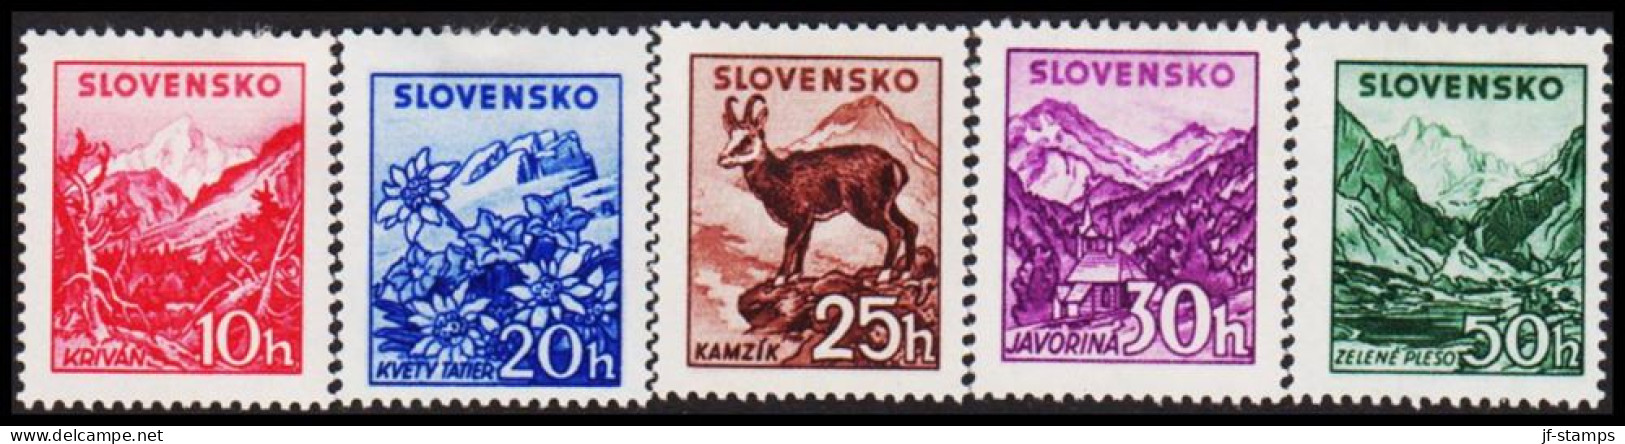 1944. SLOVENSKO Landscapes Complete Set Hinged.  (Michel 142-146) - JF546001 - Neufs